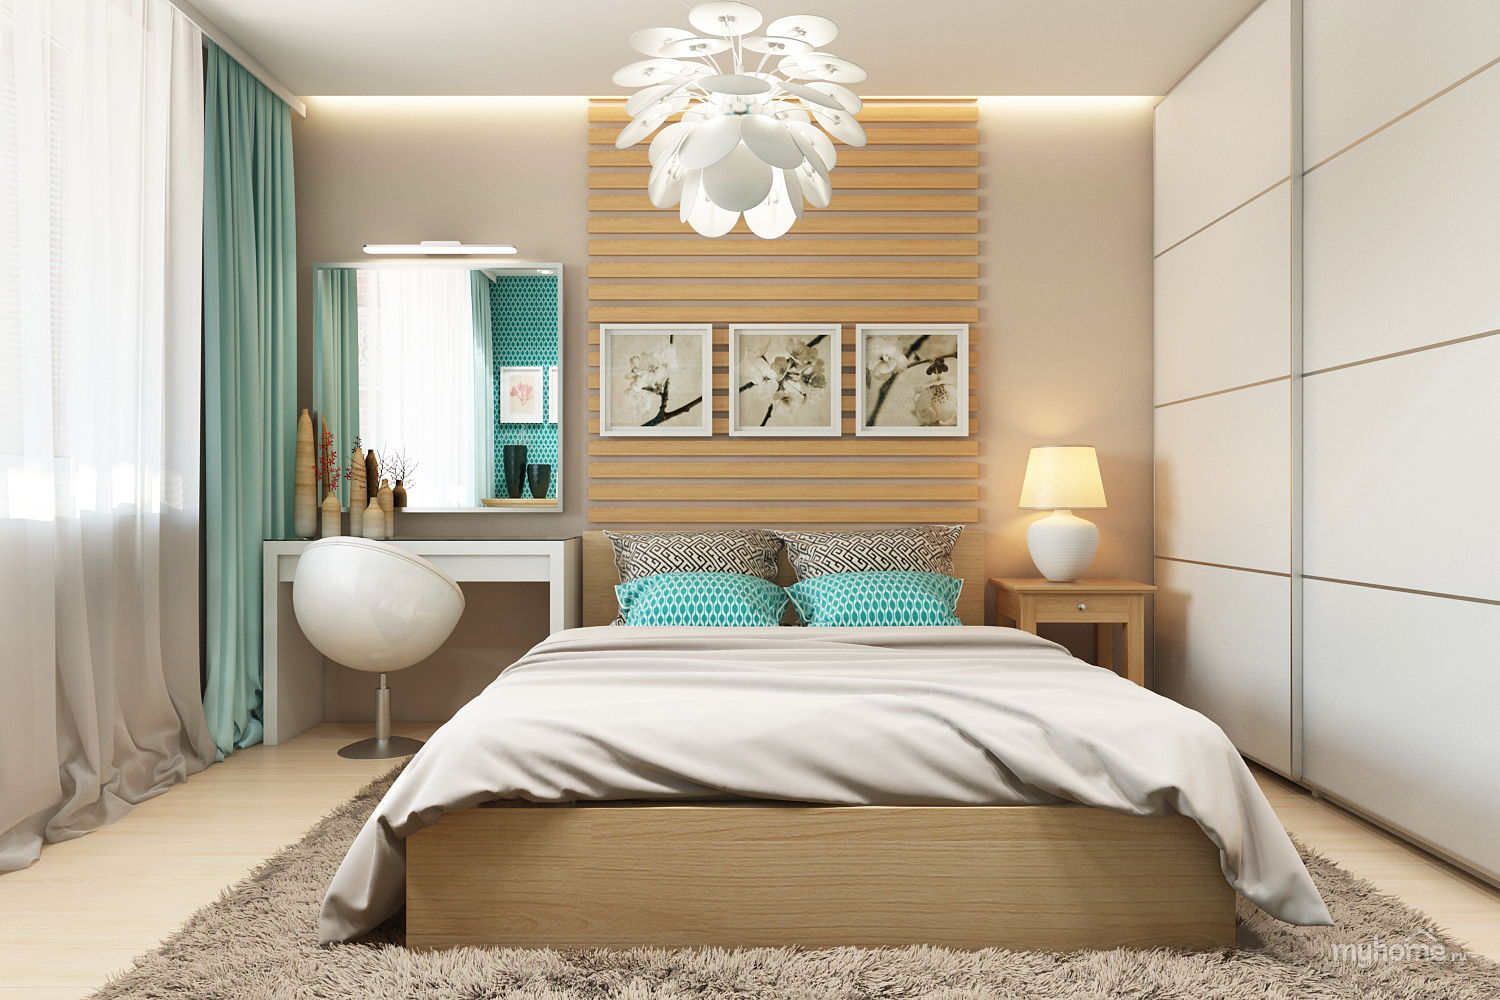 Şık yatak odası tasarımı 2018